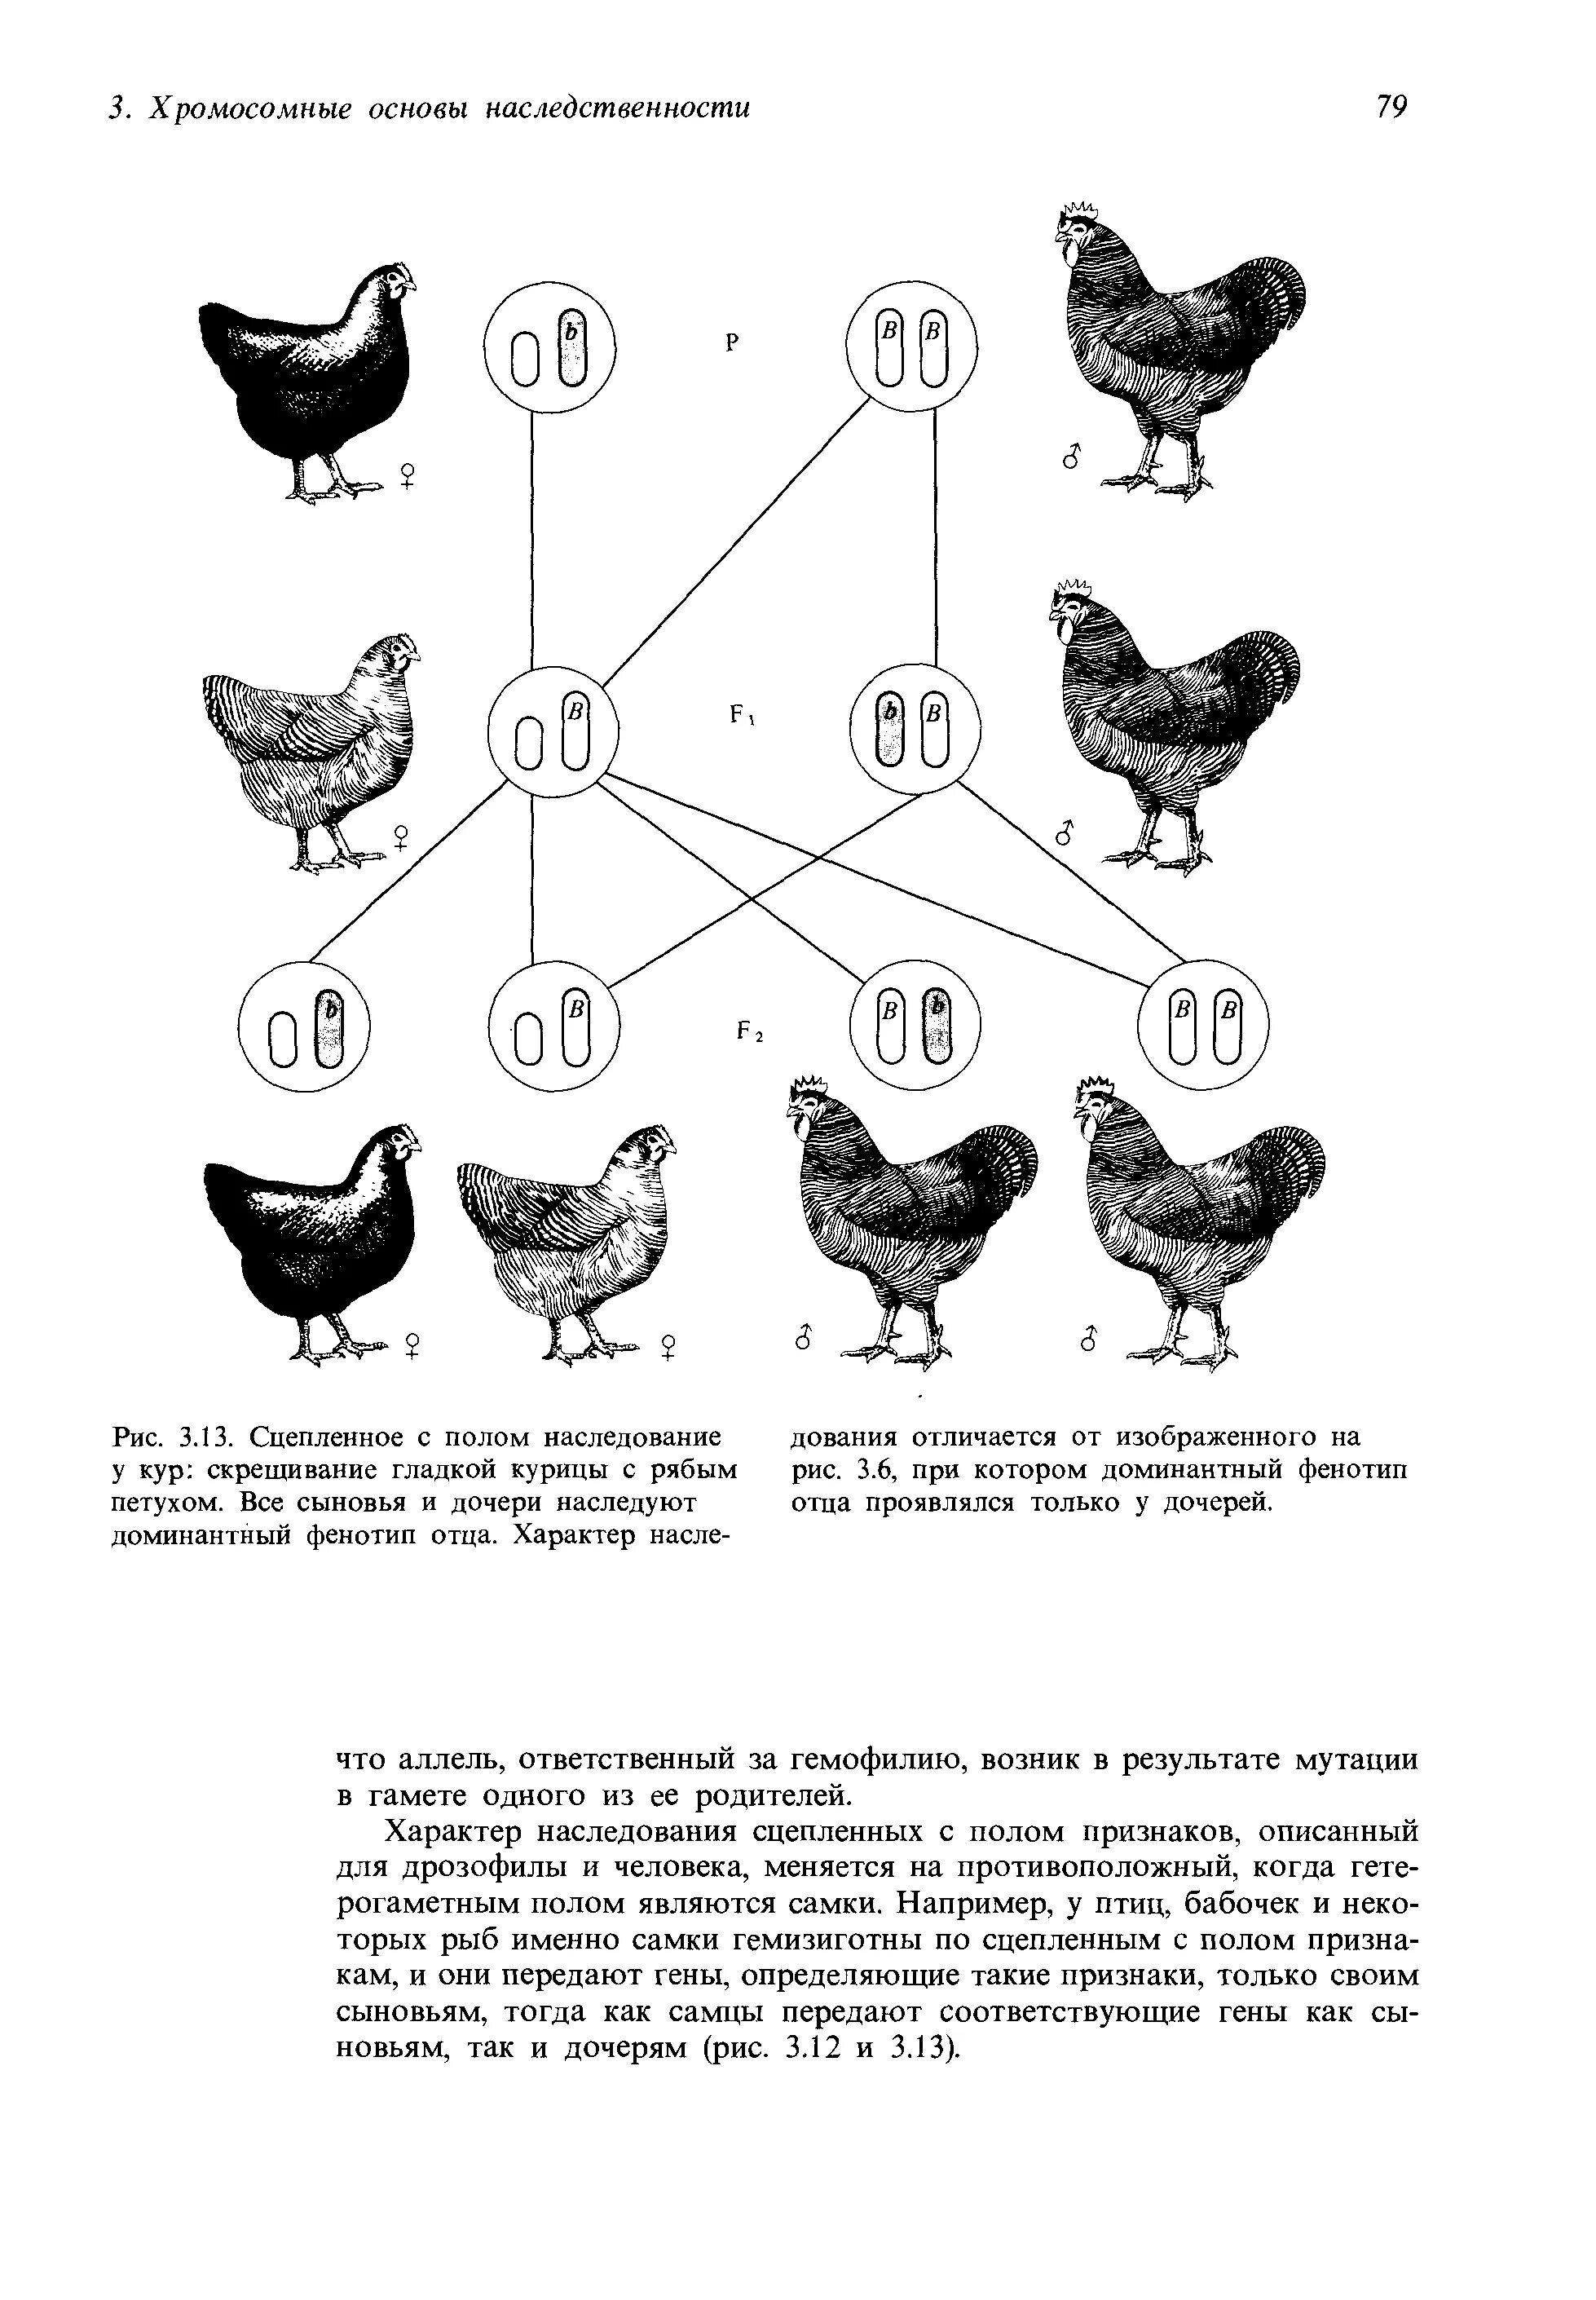 Доминантные признаки у кур. Таблица доминантных признаков у кур. Наследование окраски оперения у кур. Схема скрещивания кур. Наследование признаков у кур.